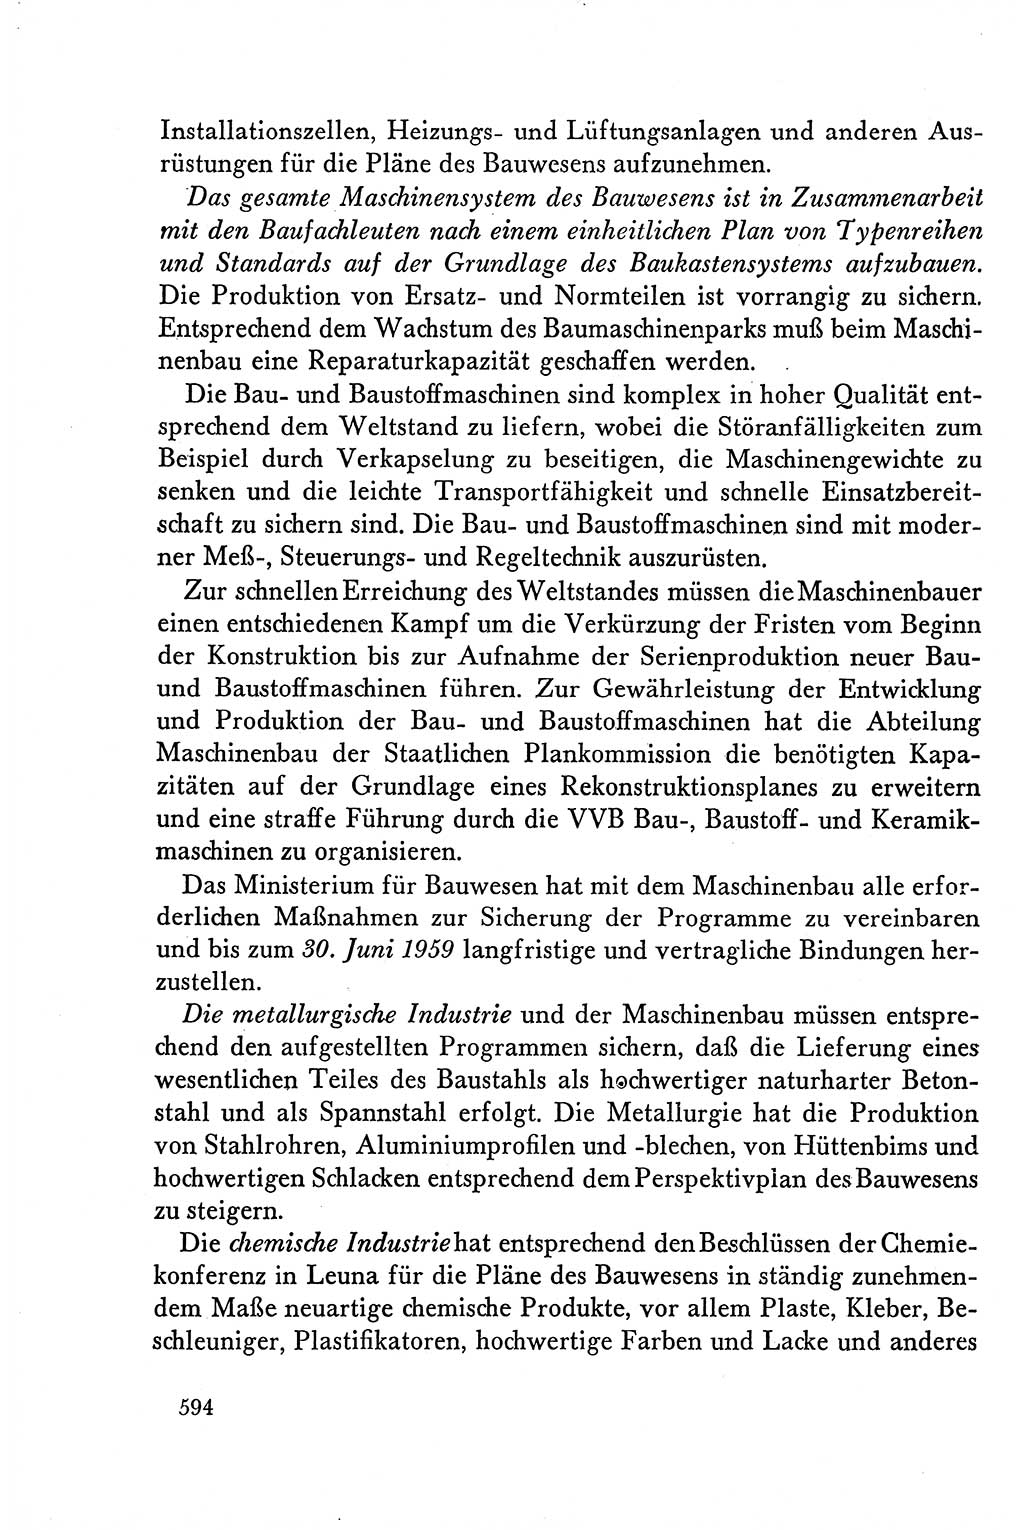 Dokumente der Sozialistischen Einheitspartei Deutschlands (SED) [Deutsche Demokratische Republik (DDR)] 1958-1959, Seite 594 (Dok. SED DDR 1958-1959, S. 594)